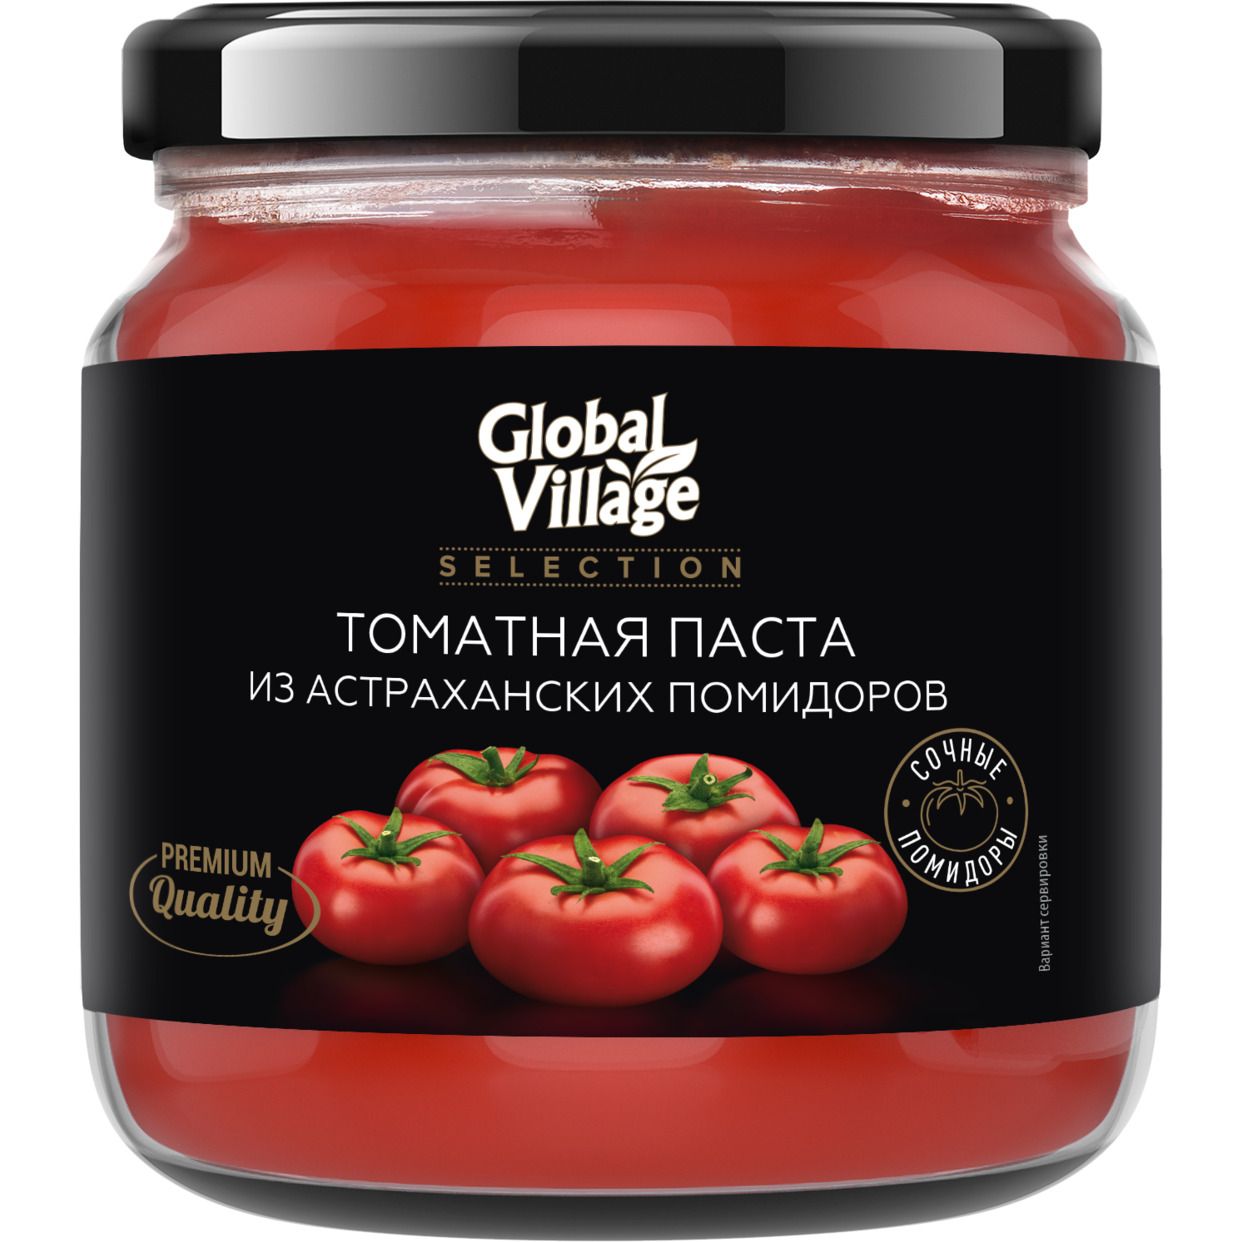 "Global Village Selection" Продукты томатные концентрированные. Паста томатная, 205 гр по акции в Пятерочке